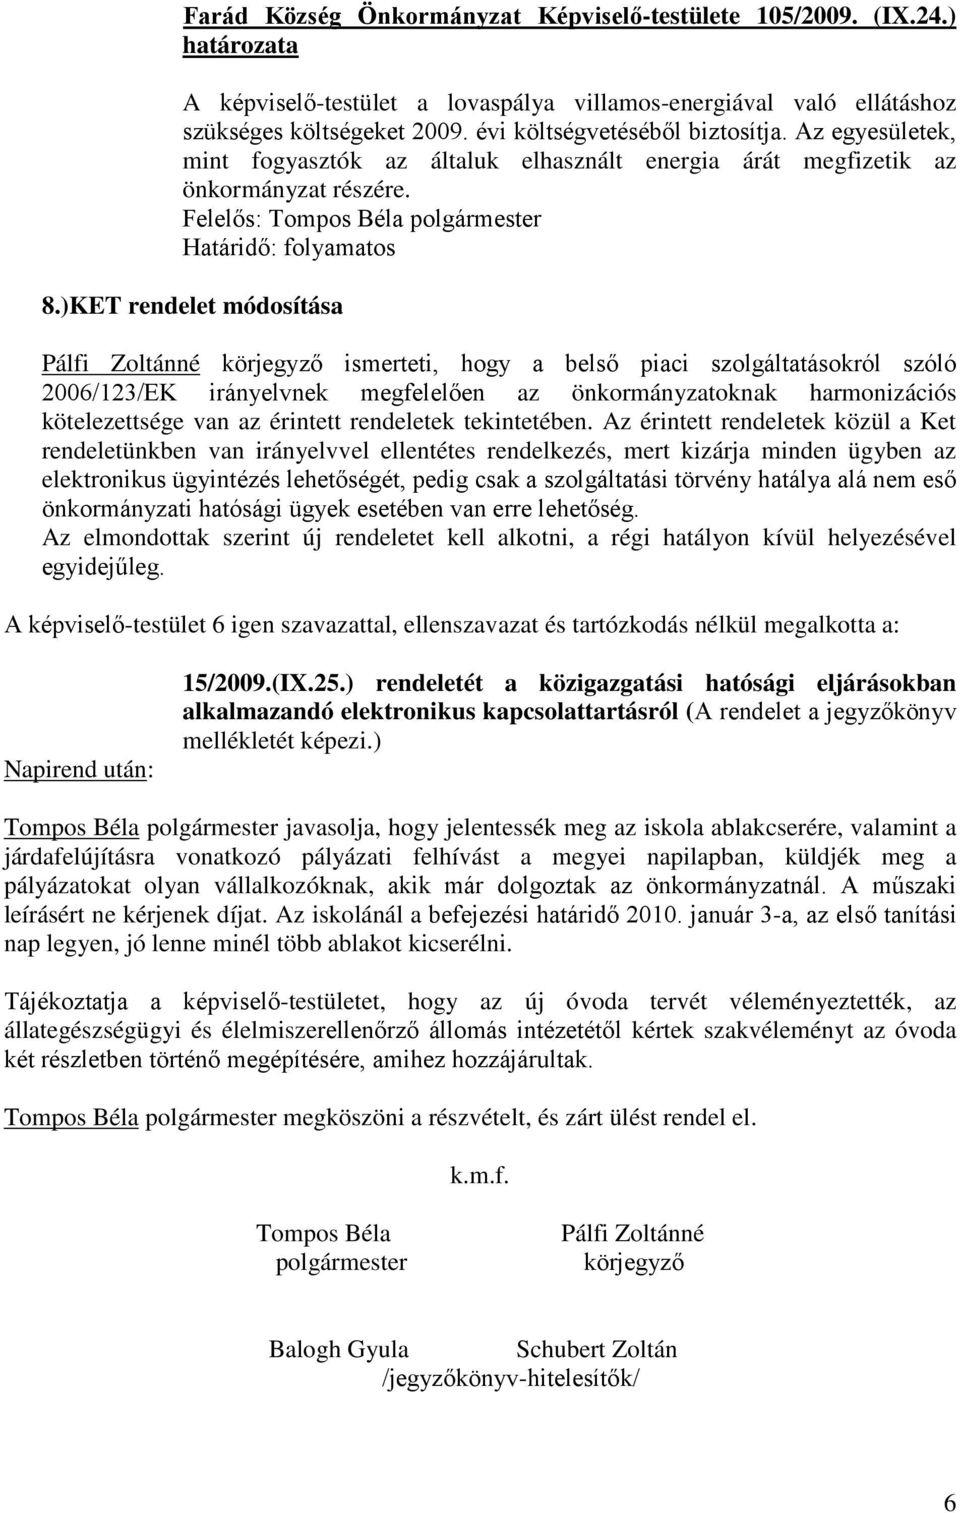 )KET rendelet módosítása Pálfi Zoltánné körjegyző ismerteti, hogy a belső piaci szolgáltatásokról szóló 2006/123/EK irányelvnek megfelelően az önkormányzatoknak harmonizációs kötelezettsége van az